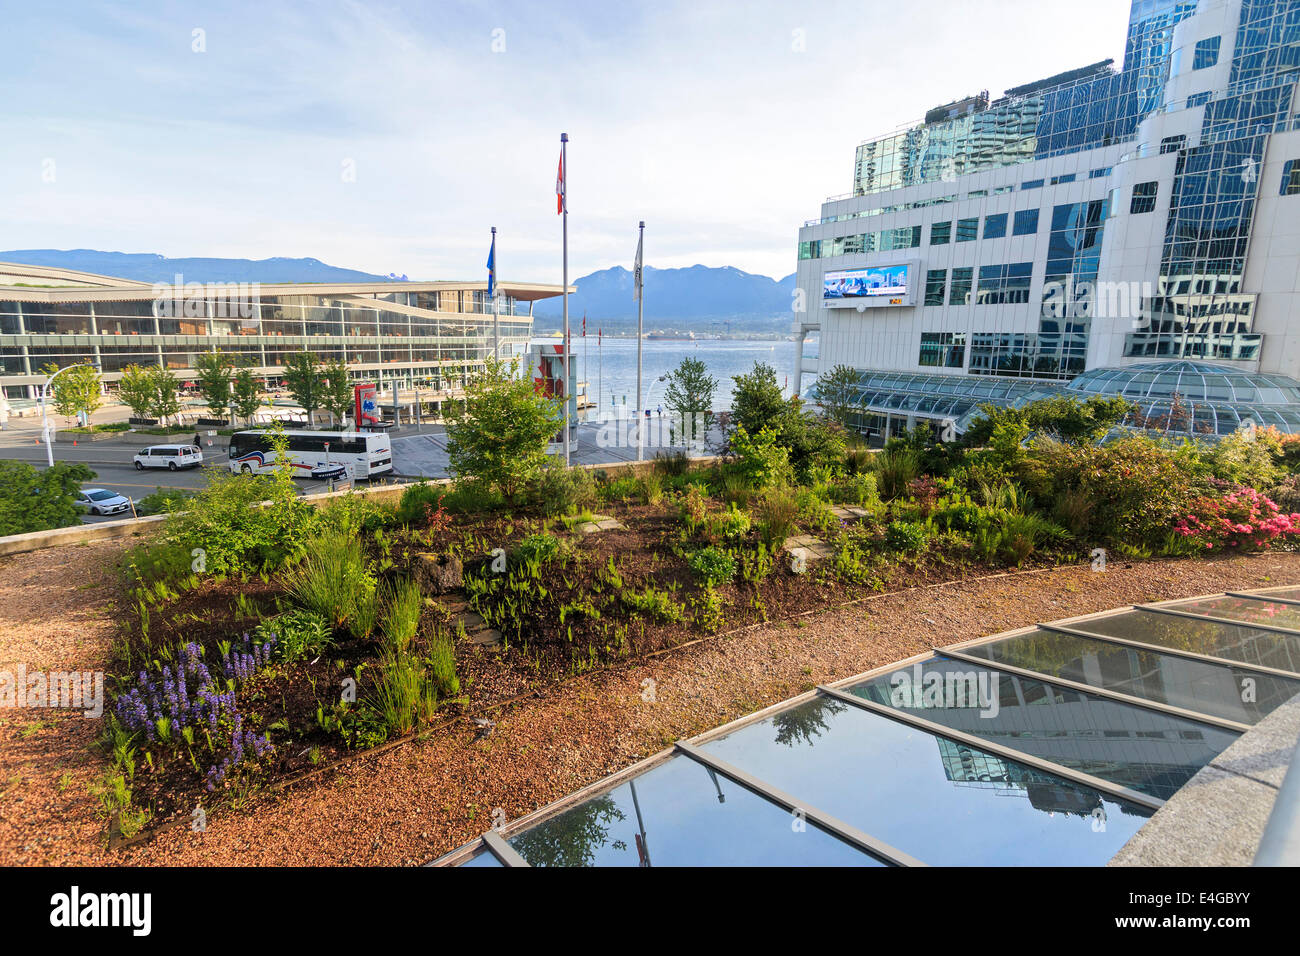 Uno dei due giardini sul tetto presso il Fairmont hotel sul lungomare di Vancouver e a Vancouver, British Columbia, Canada. Foto Stock